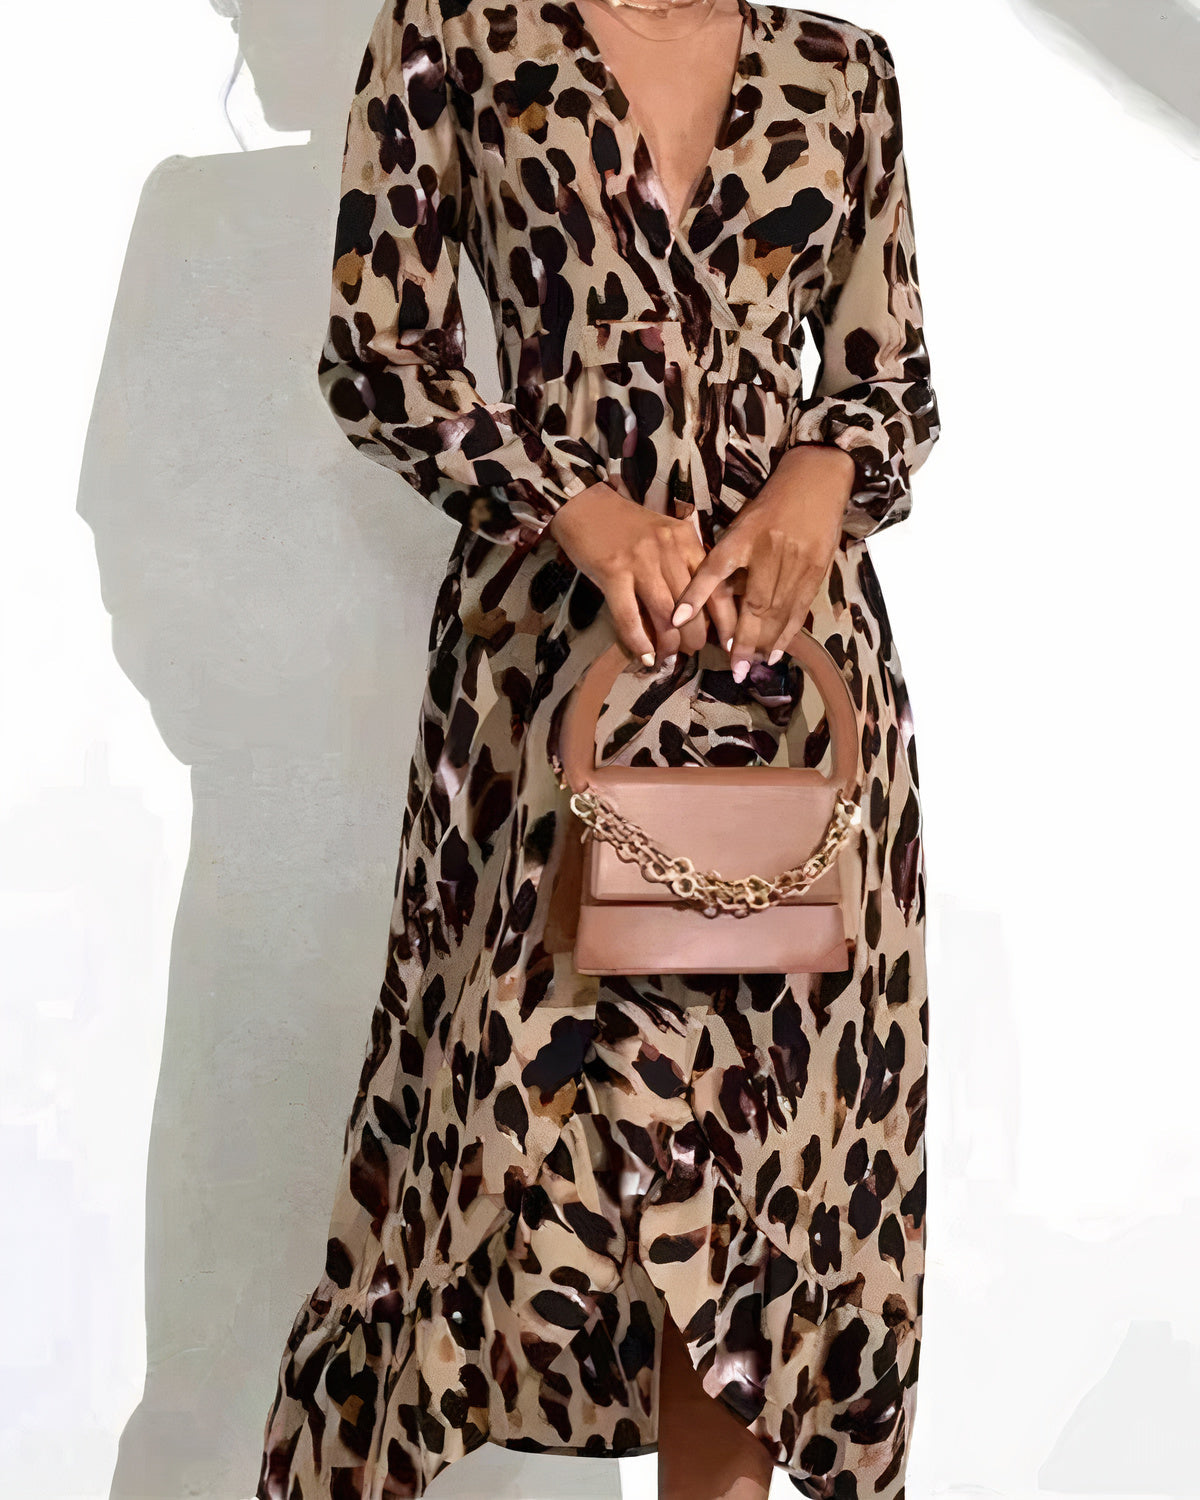 Leopardenmuster-Kleid - Wilda